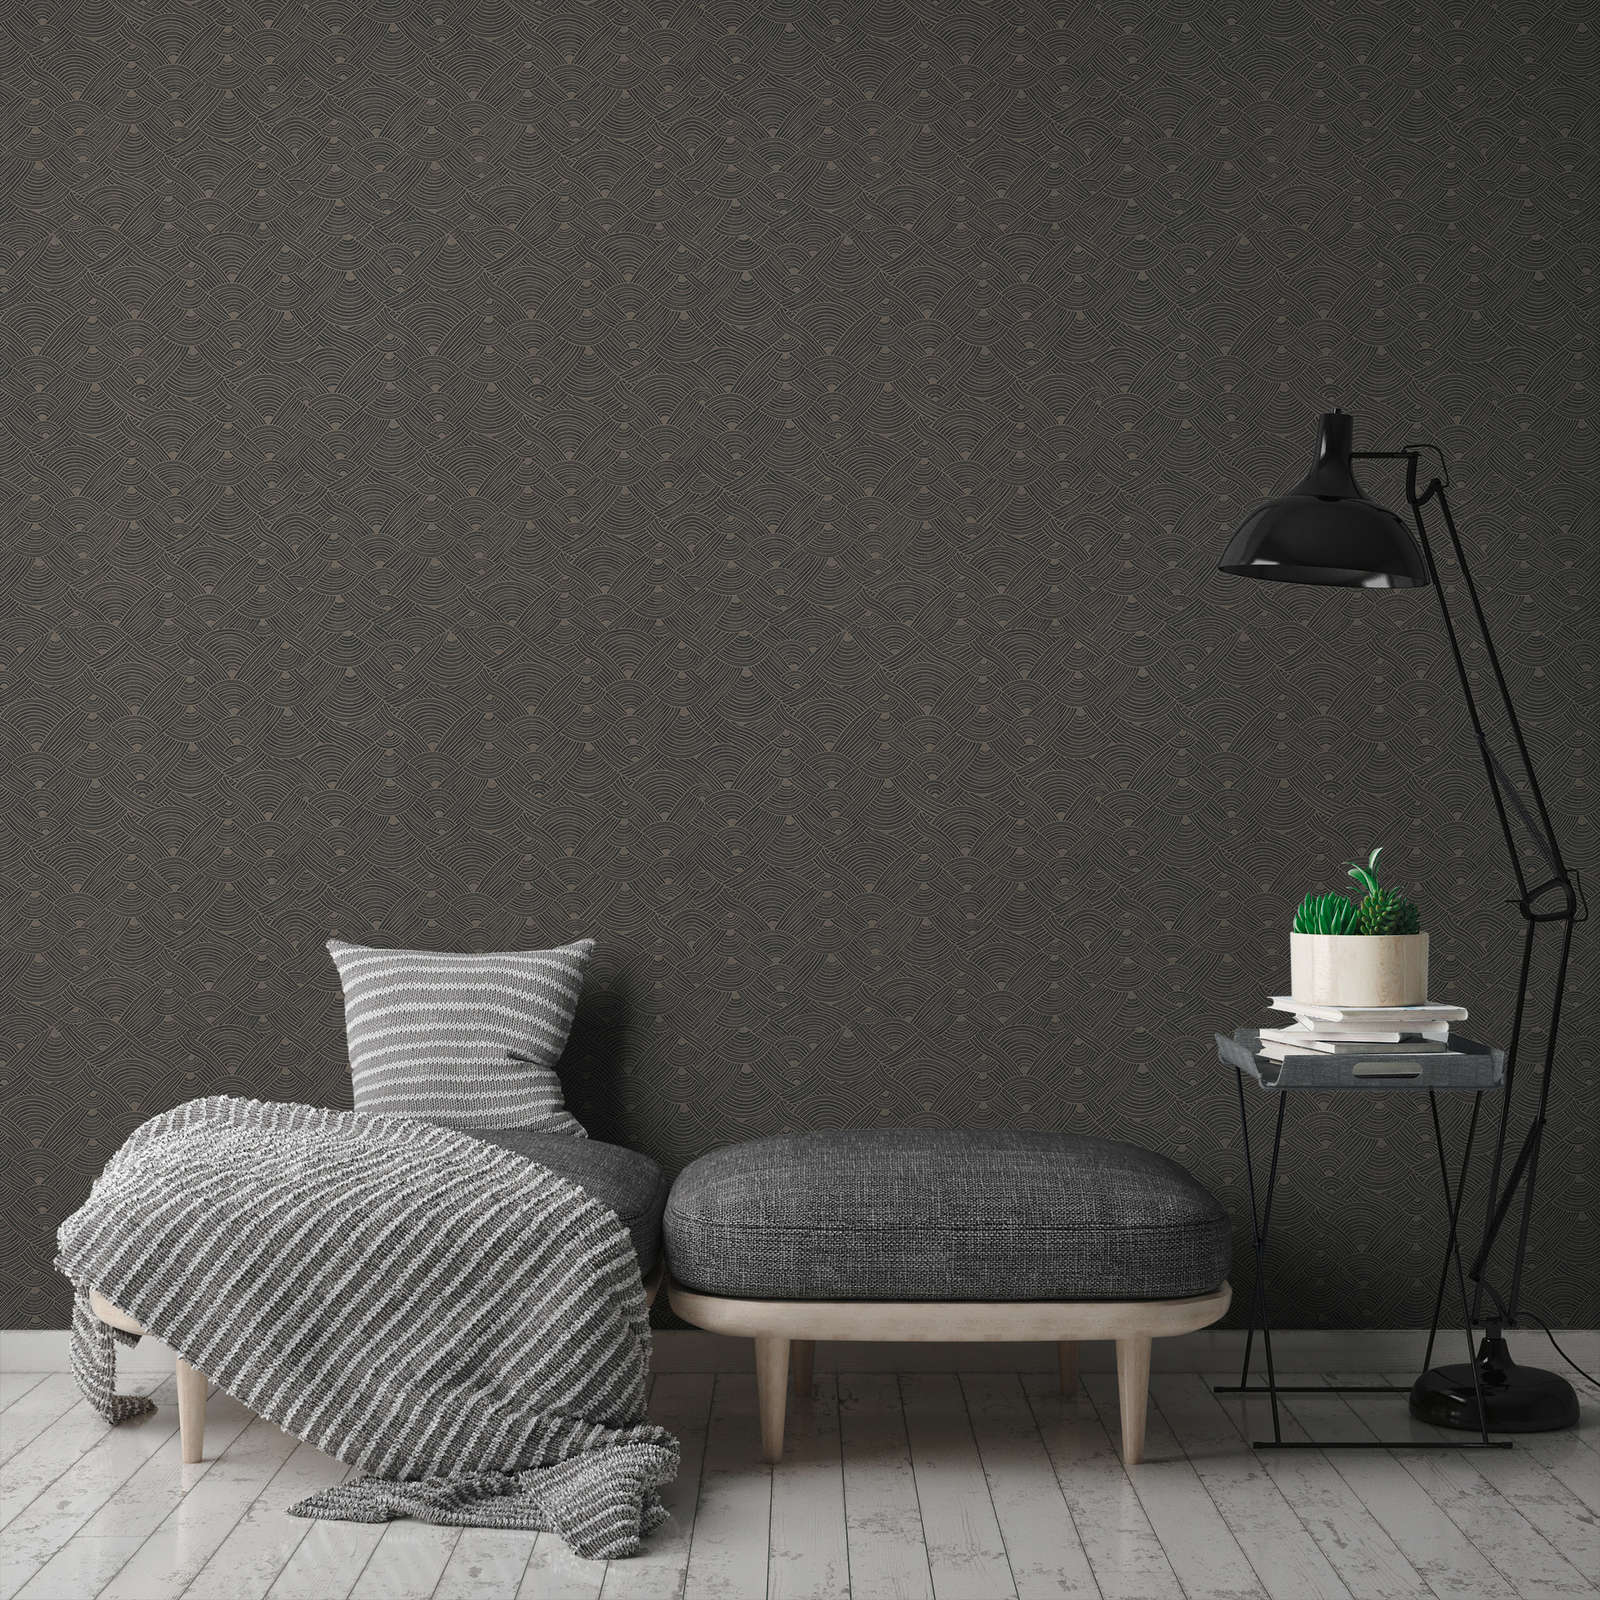             Dark wallpaper braided motif with texture design - grey, black
        